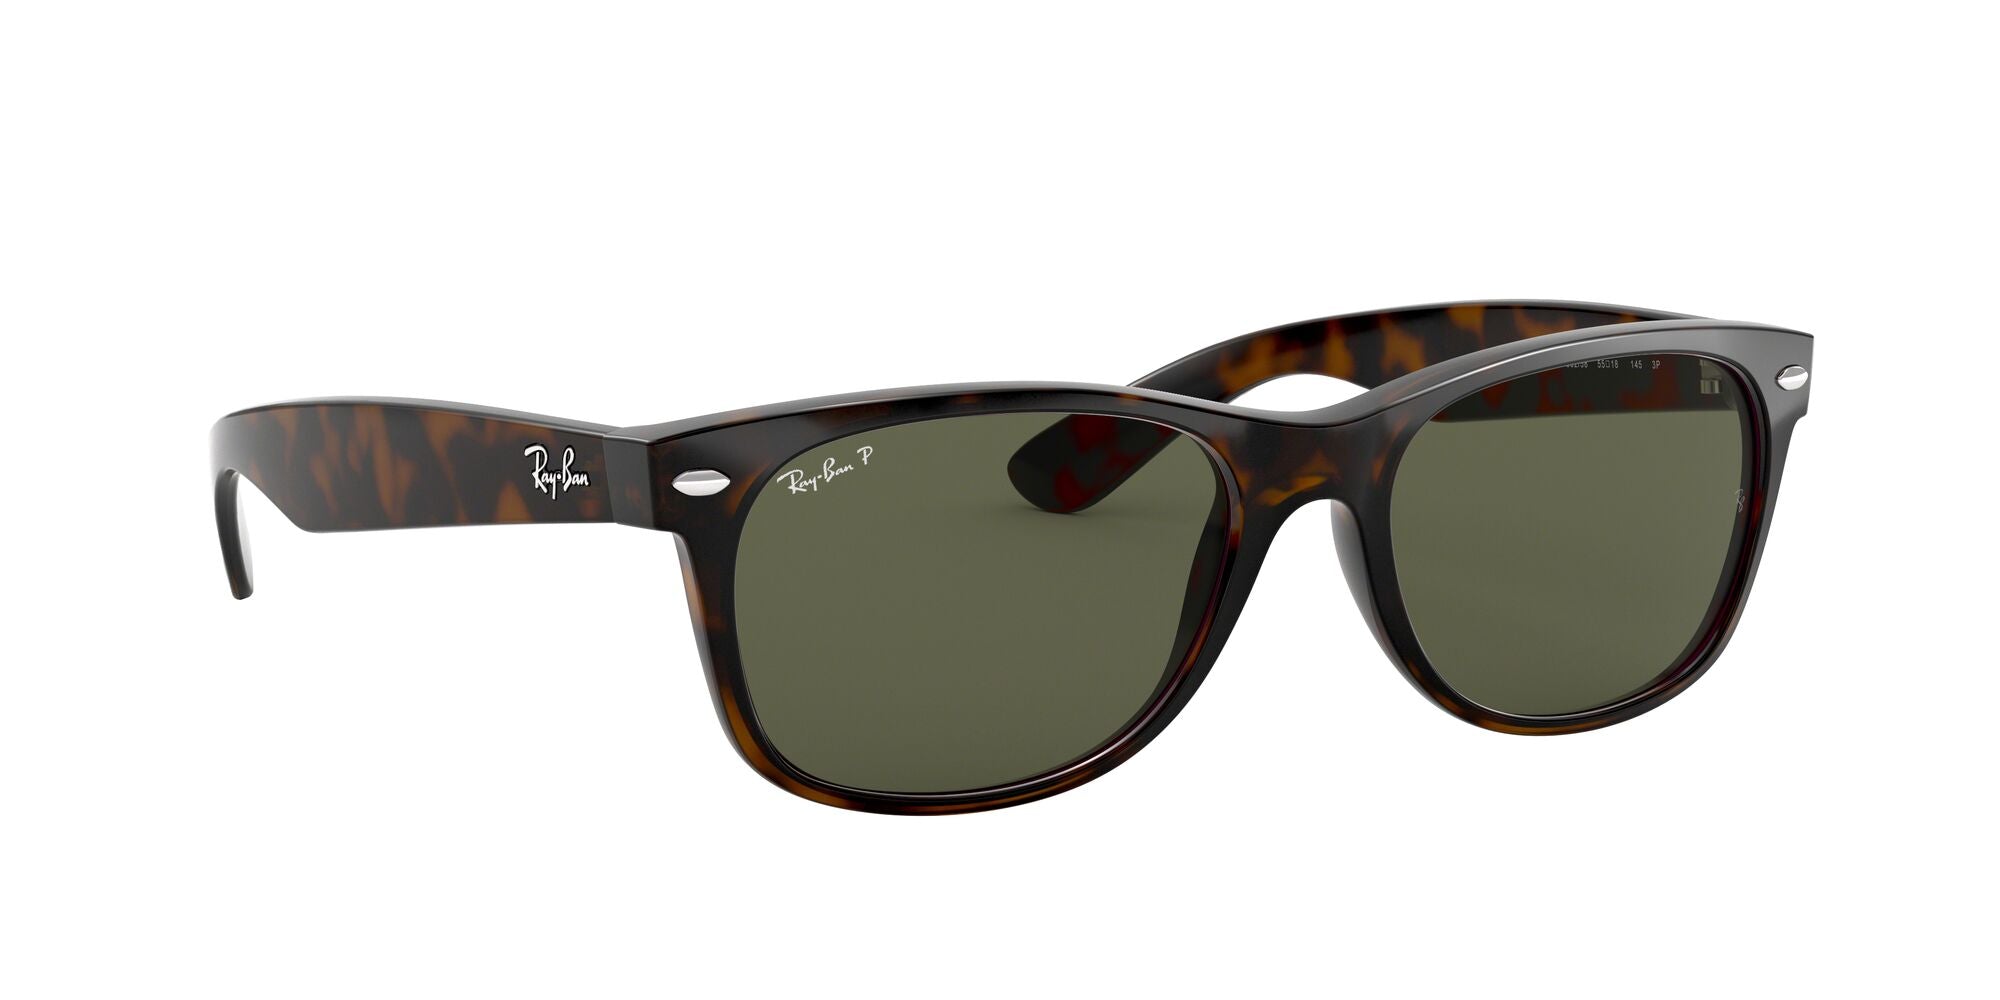 Ray-Ban 2132 New Wayfarer Tortoise Polarized - iKandi Sunglasses